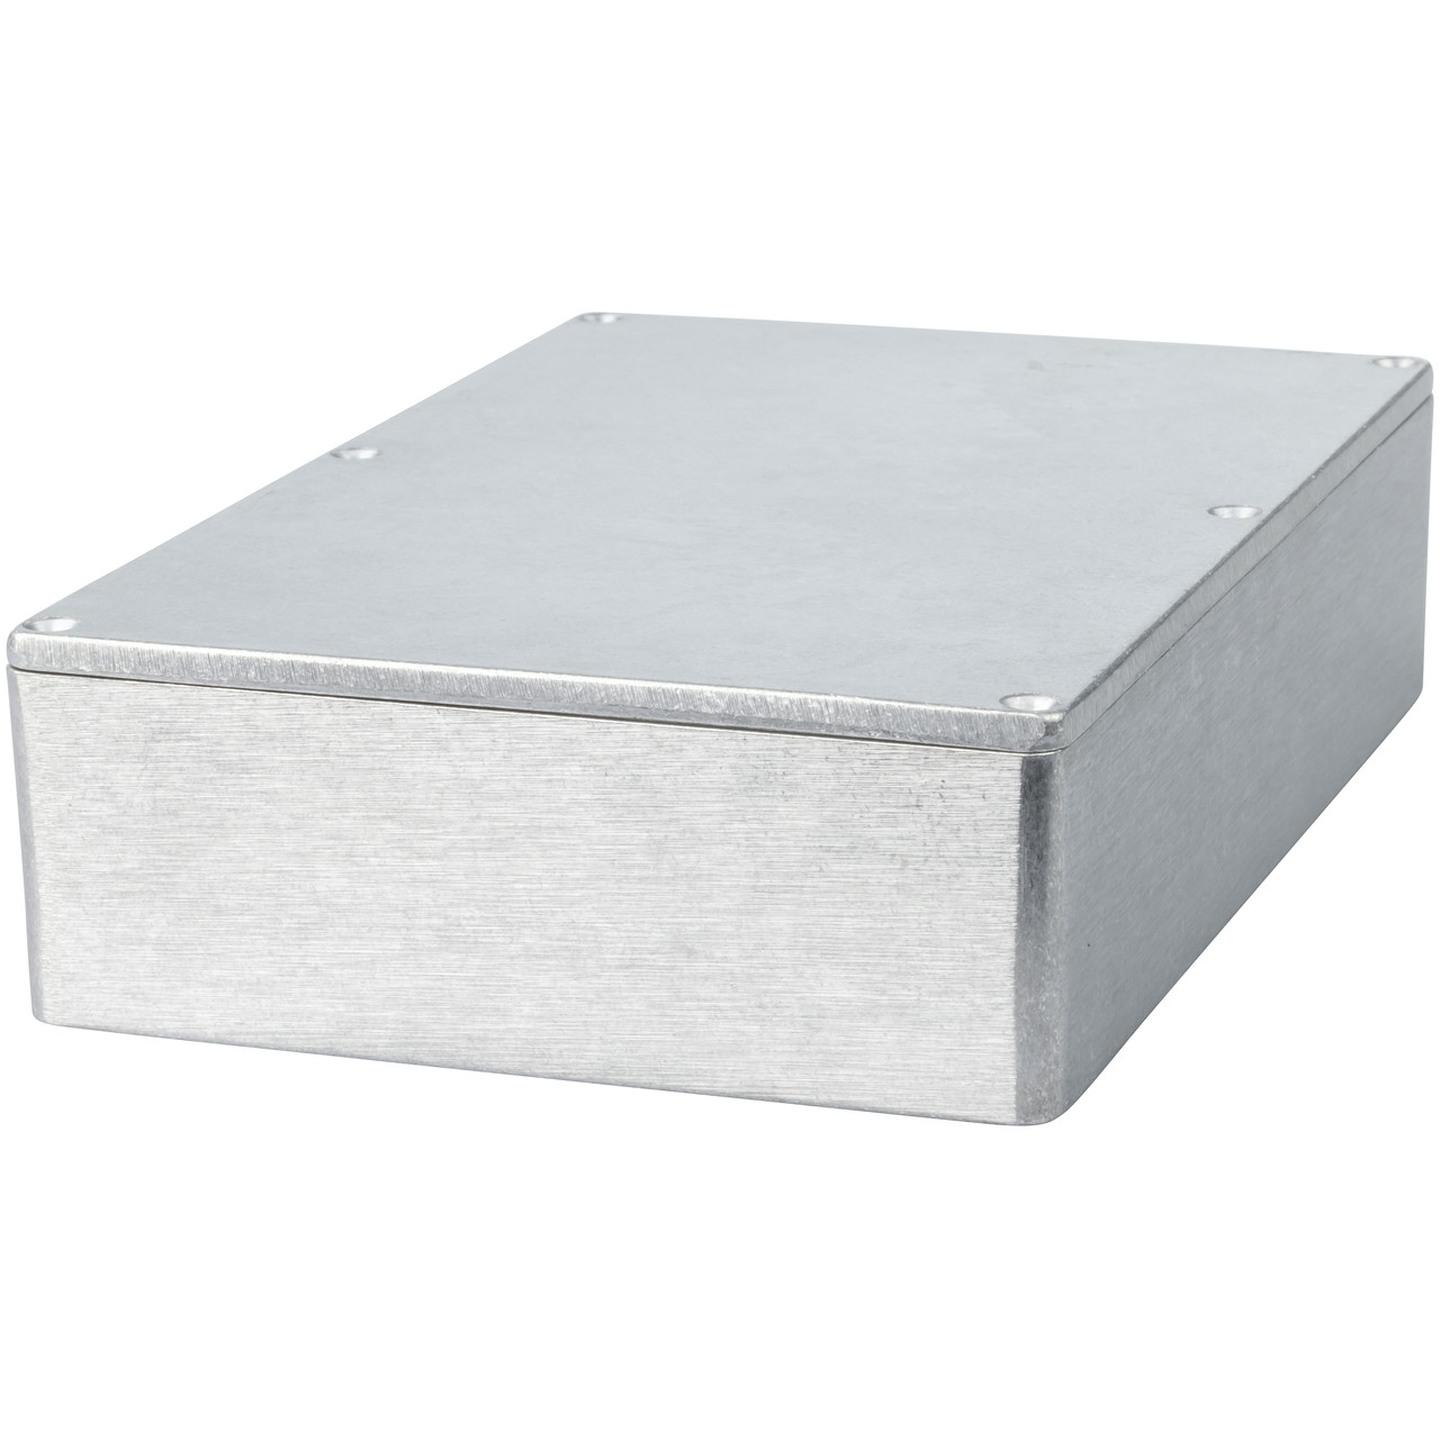 Sealed Diecast Aluminium Enclosure - 222 x 146 x 55mm